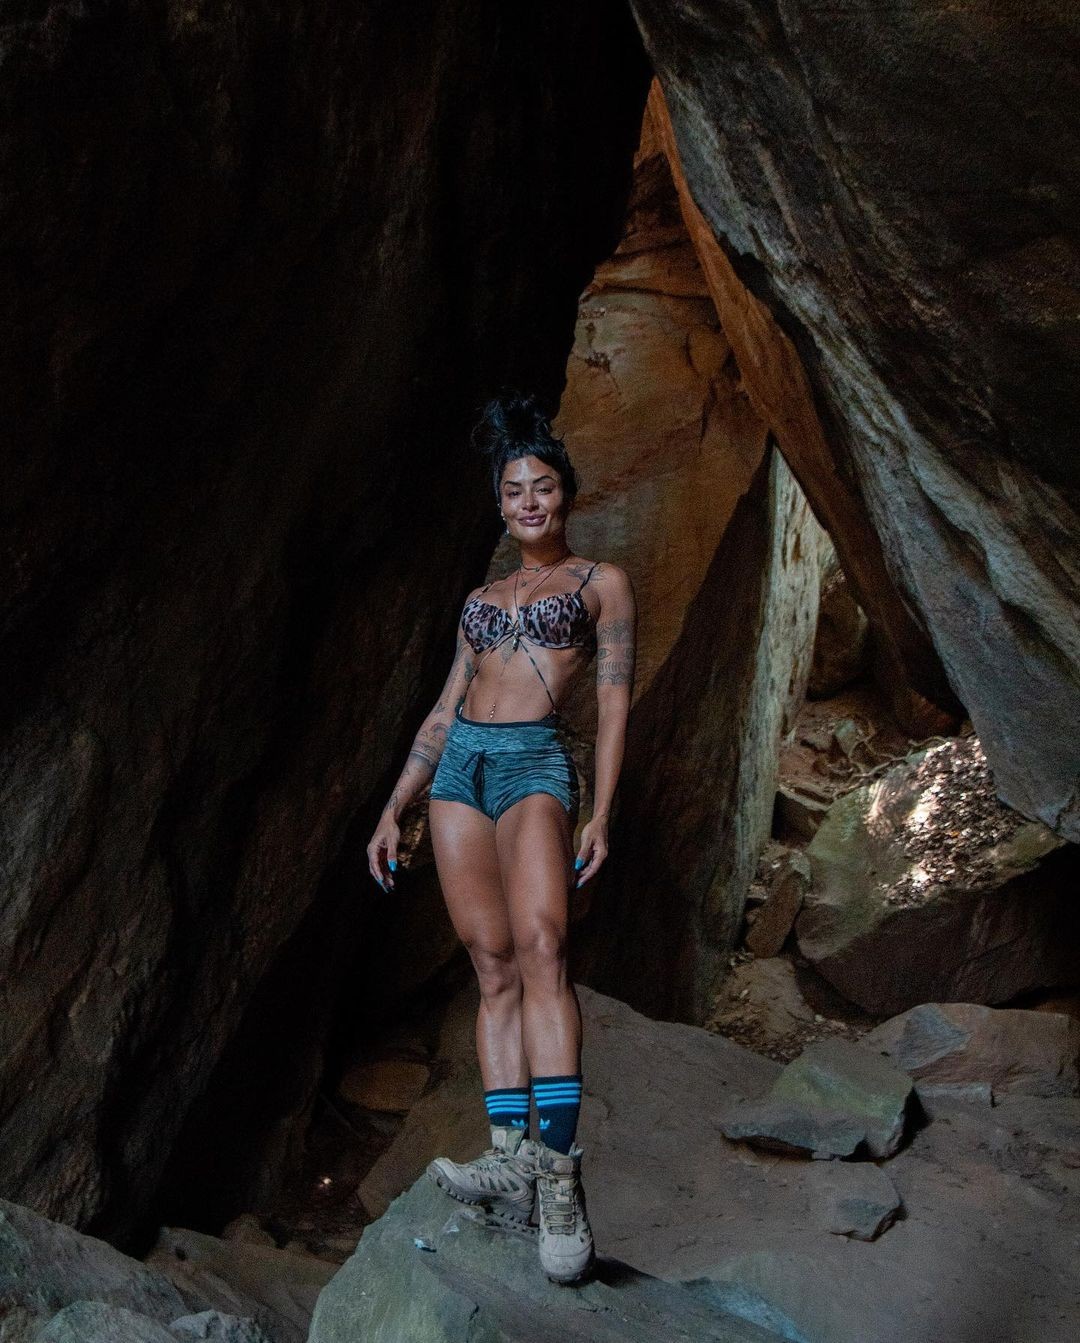 A influenciadora posa em meio a rochas durante sua caminhada (Foto: Reprodução Instagram)